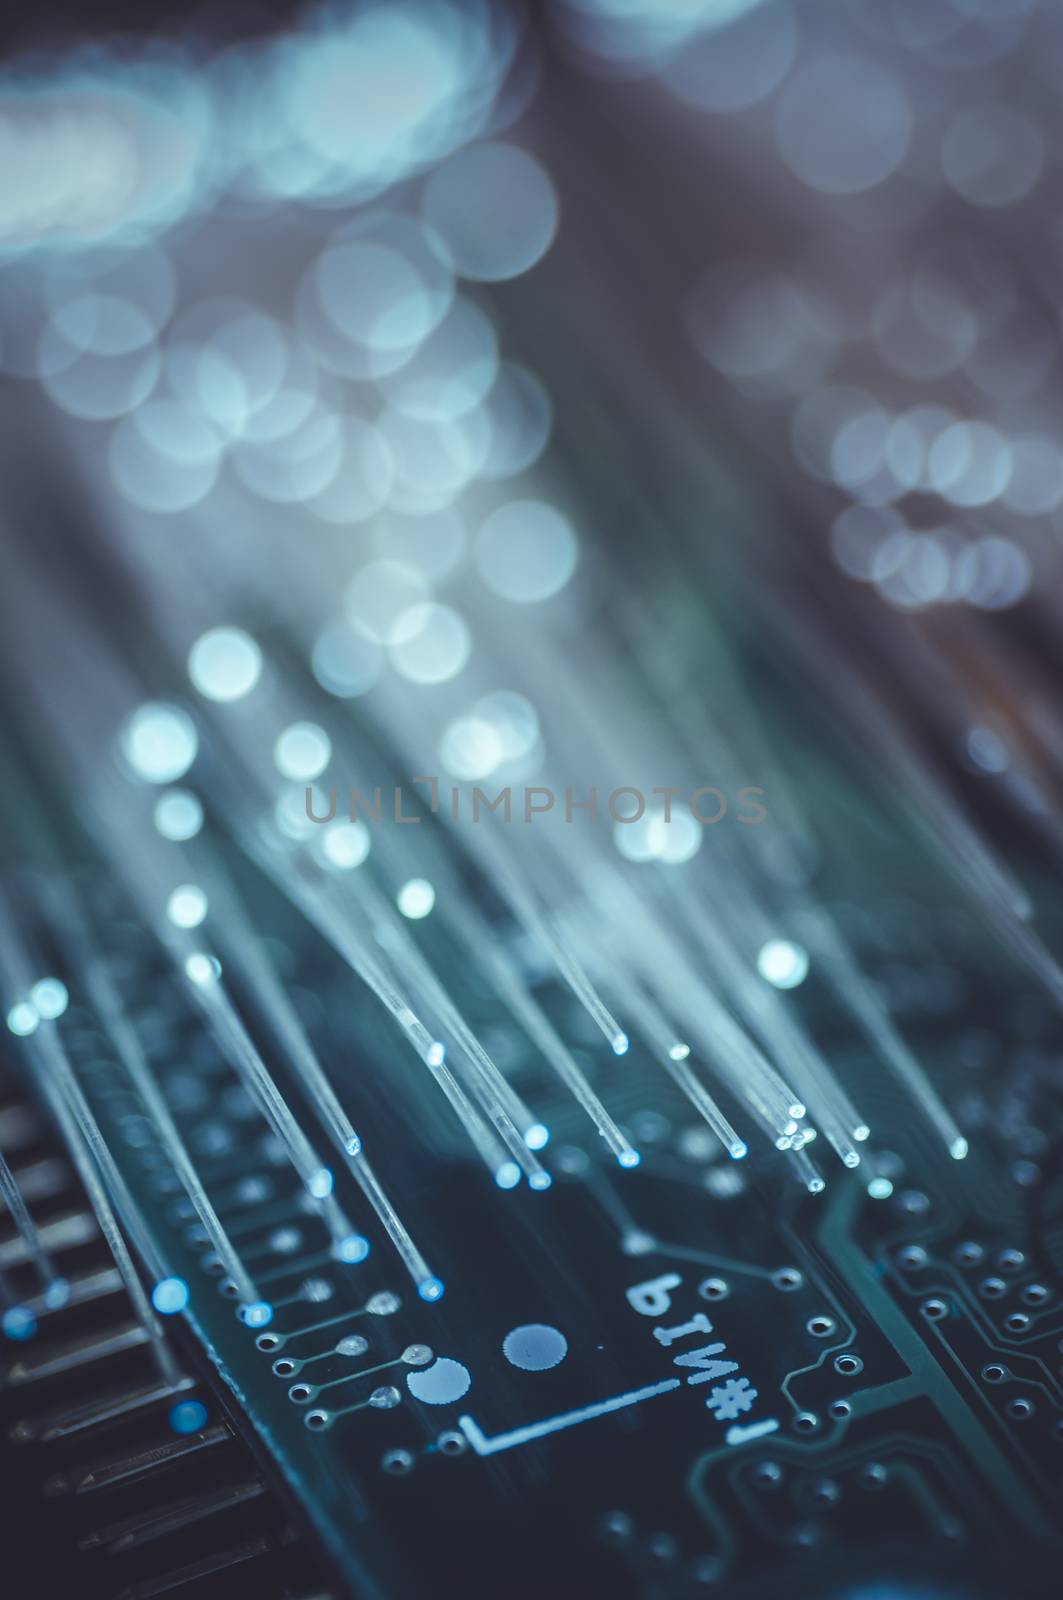 network information, motherboard chip Fiber optic lights by FernandoCortes